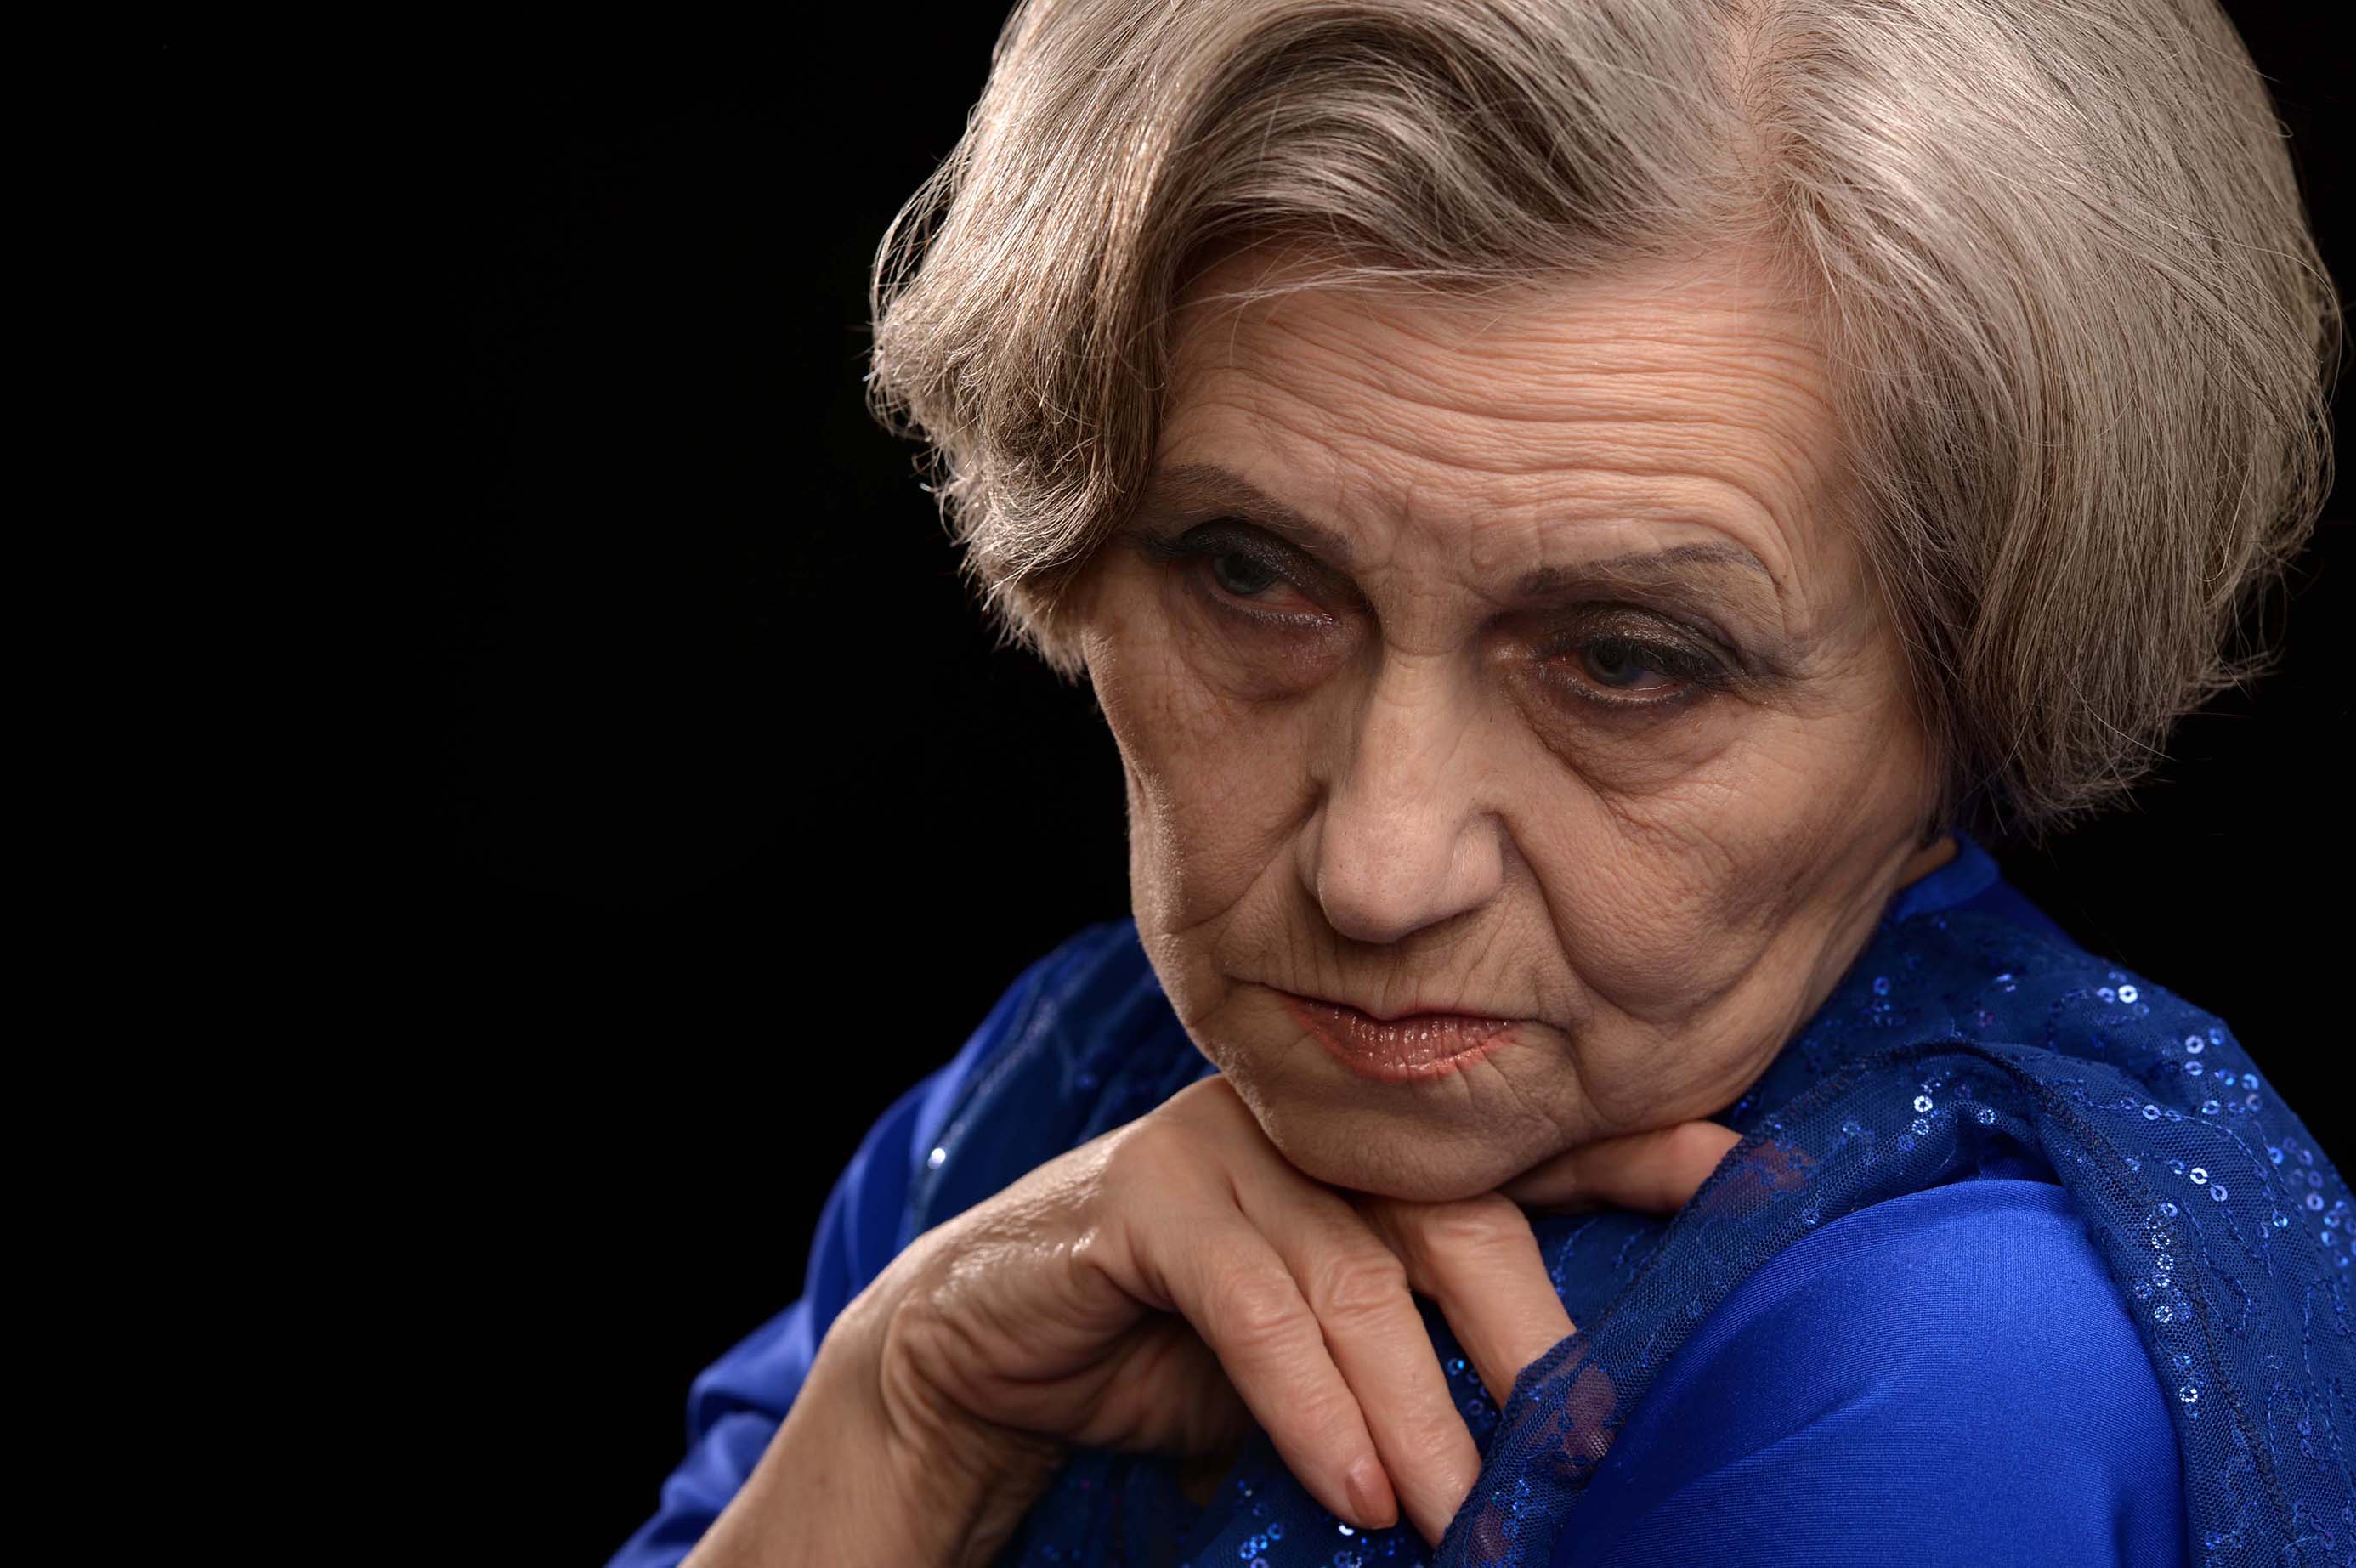 pensive-looking elderly woman